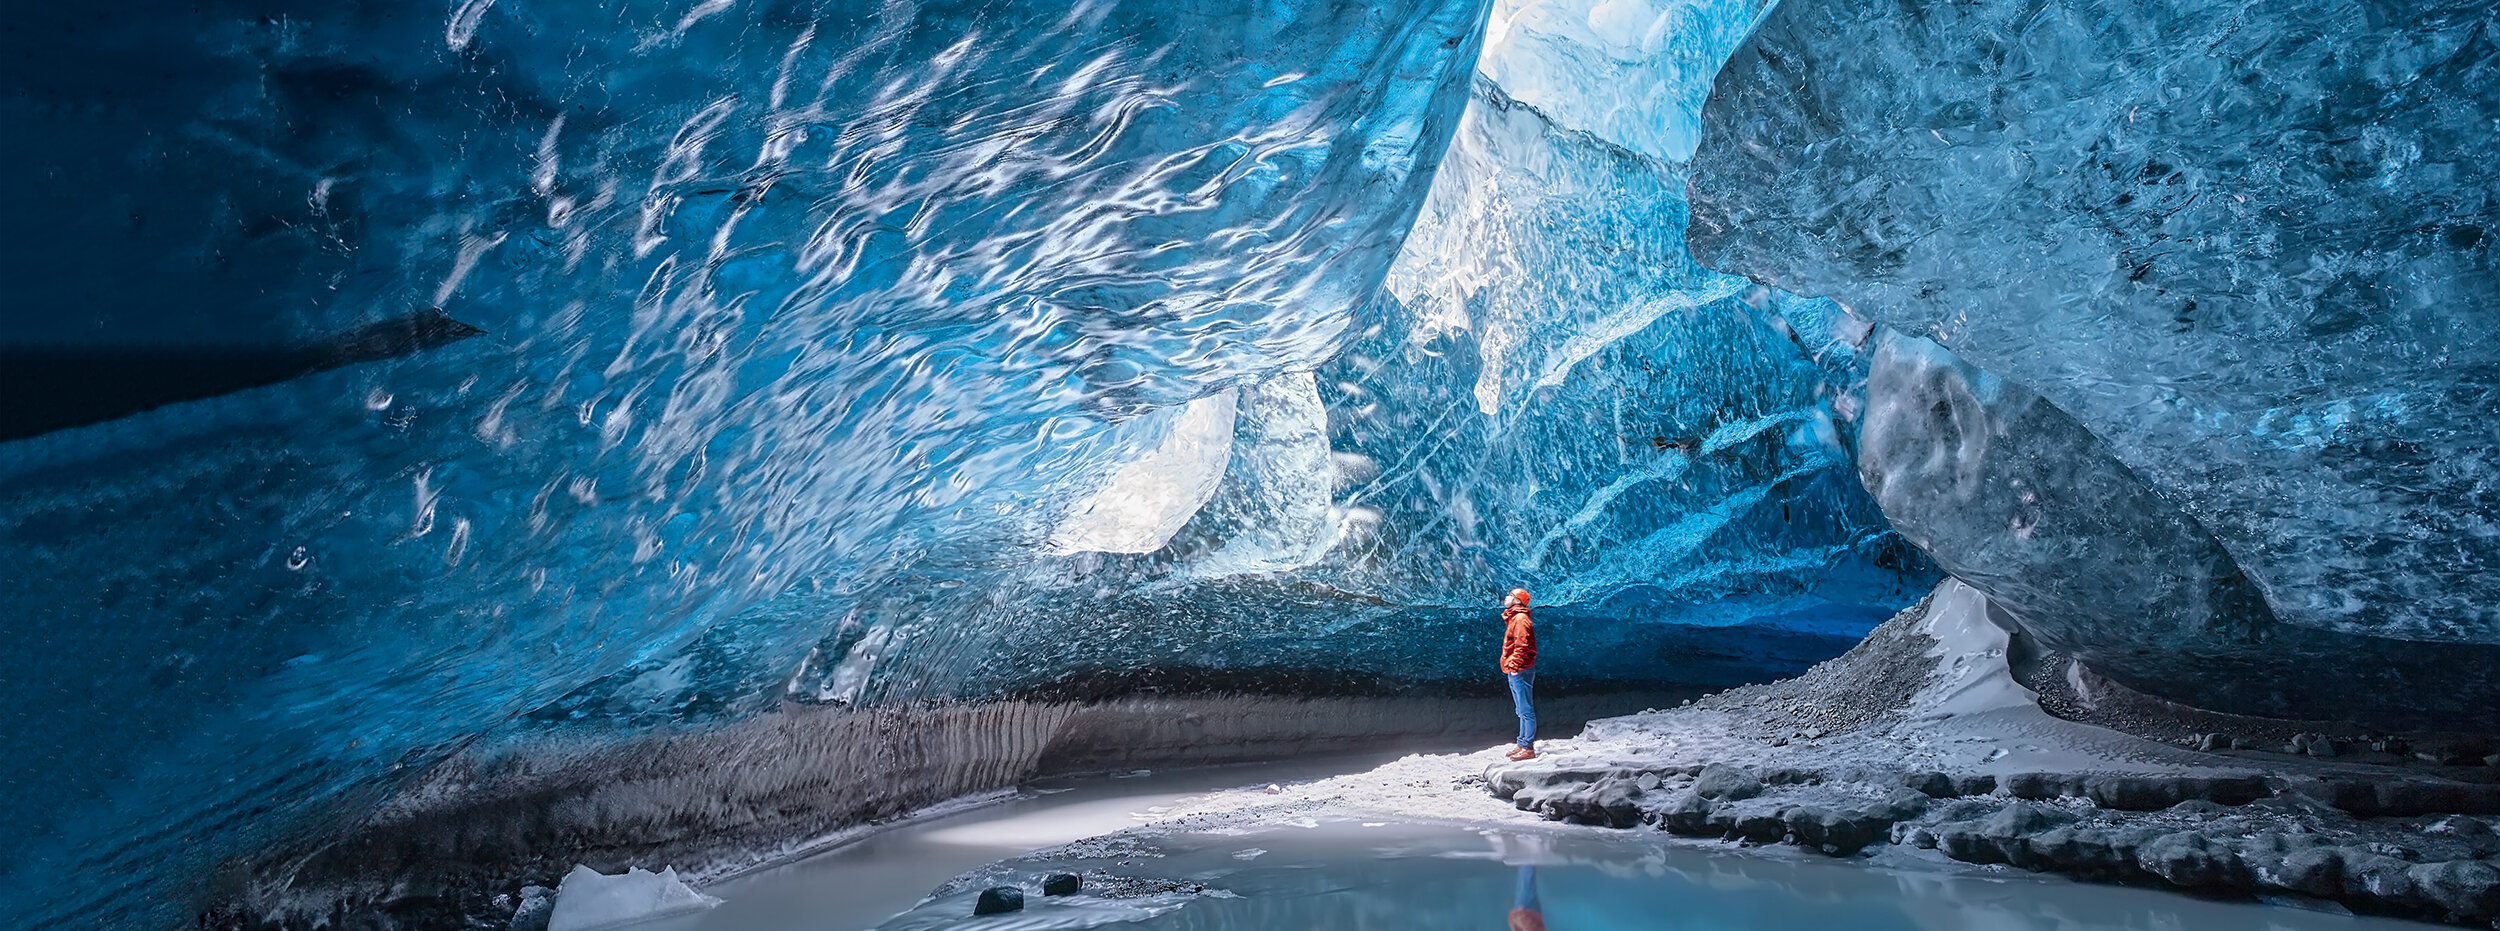 Mann in einer Eishöhle | IGP-DURA®one 56 Pulverlack-Serie für tiefere Einbrenntemparaturen | © Shutterstock